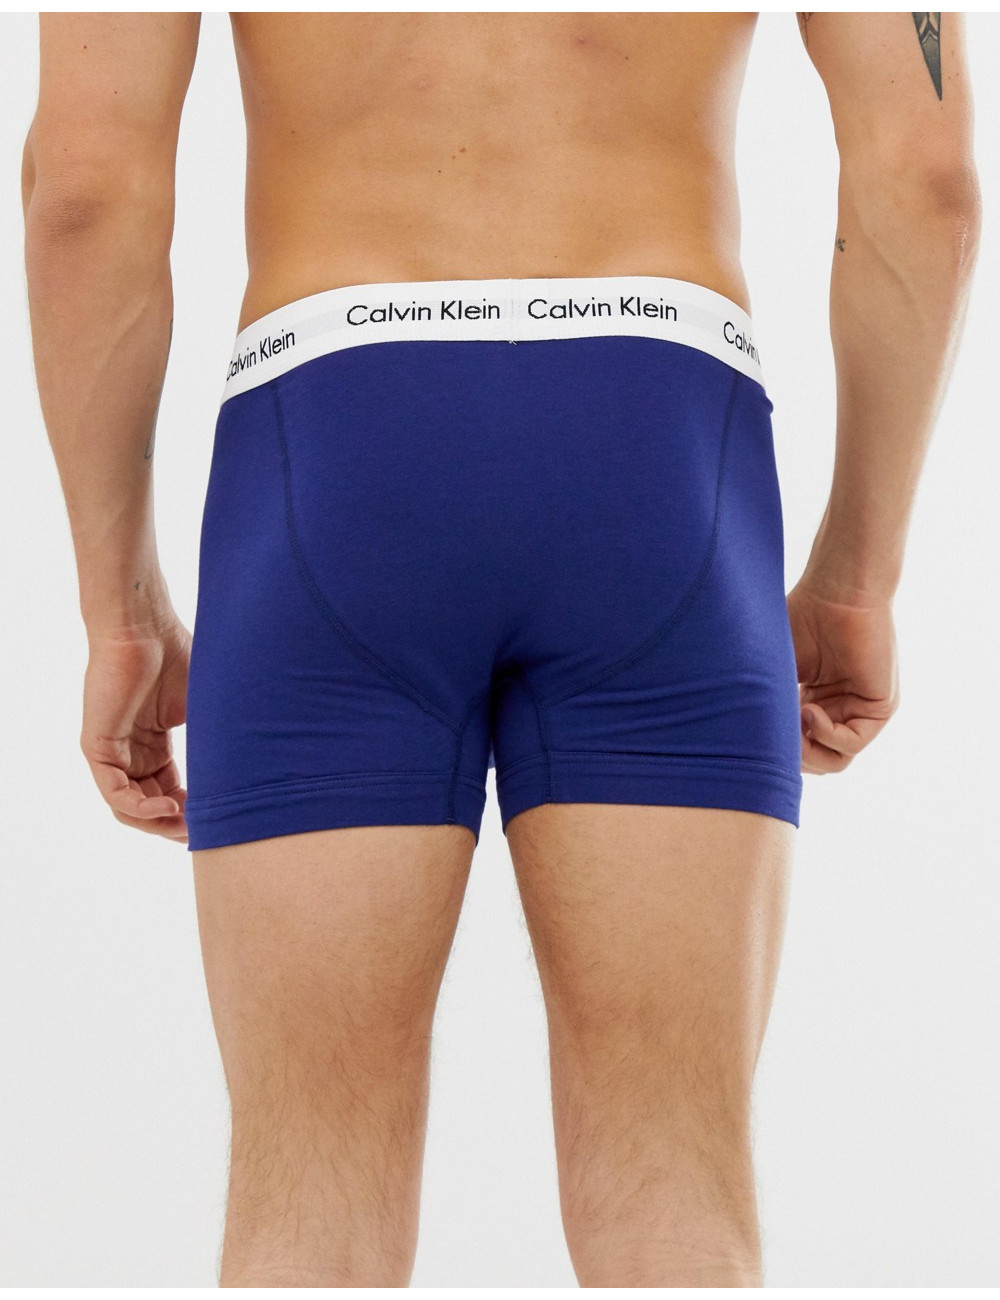 Calvin Klein trunks 3 pack...